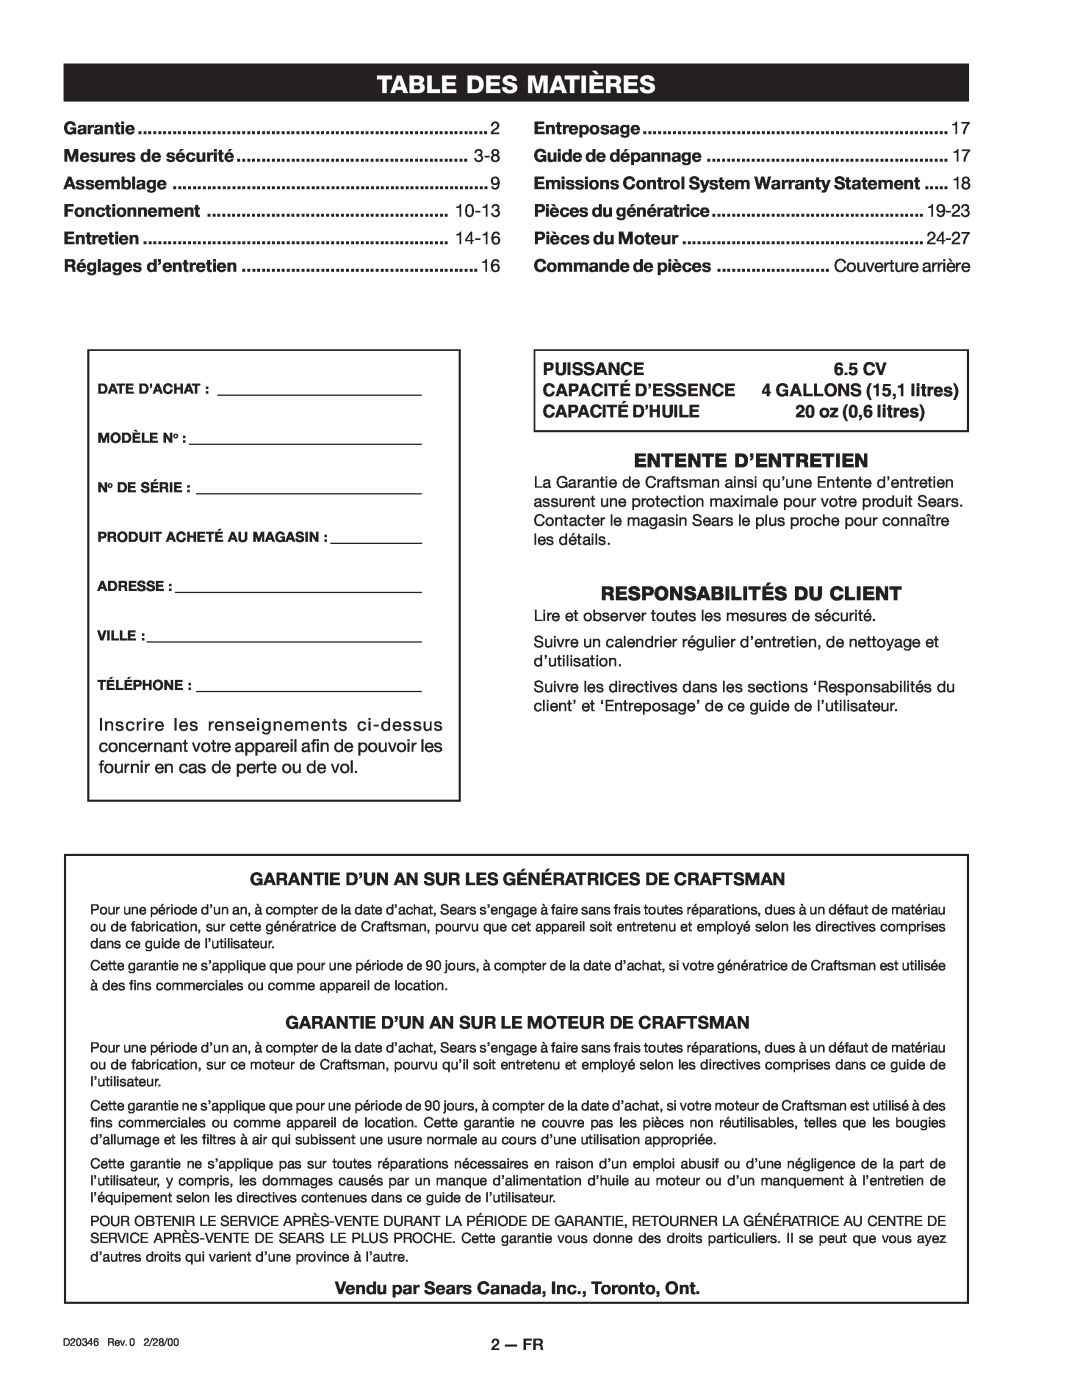 Craftsman D20346 Table Des Matières, Entente D’Entretien, Responsabilités Du Client, 10-13, 14-16, 19-23, 24-27, Puissance 